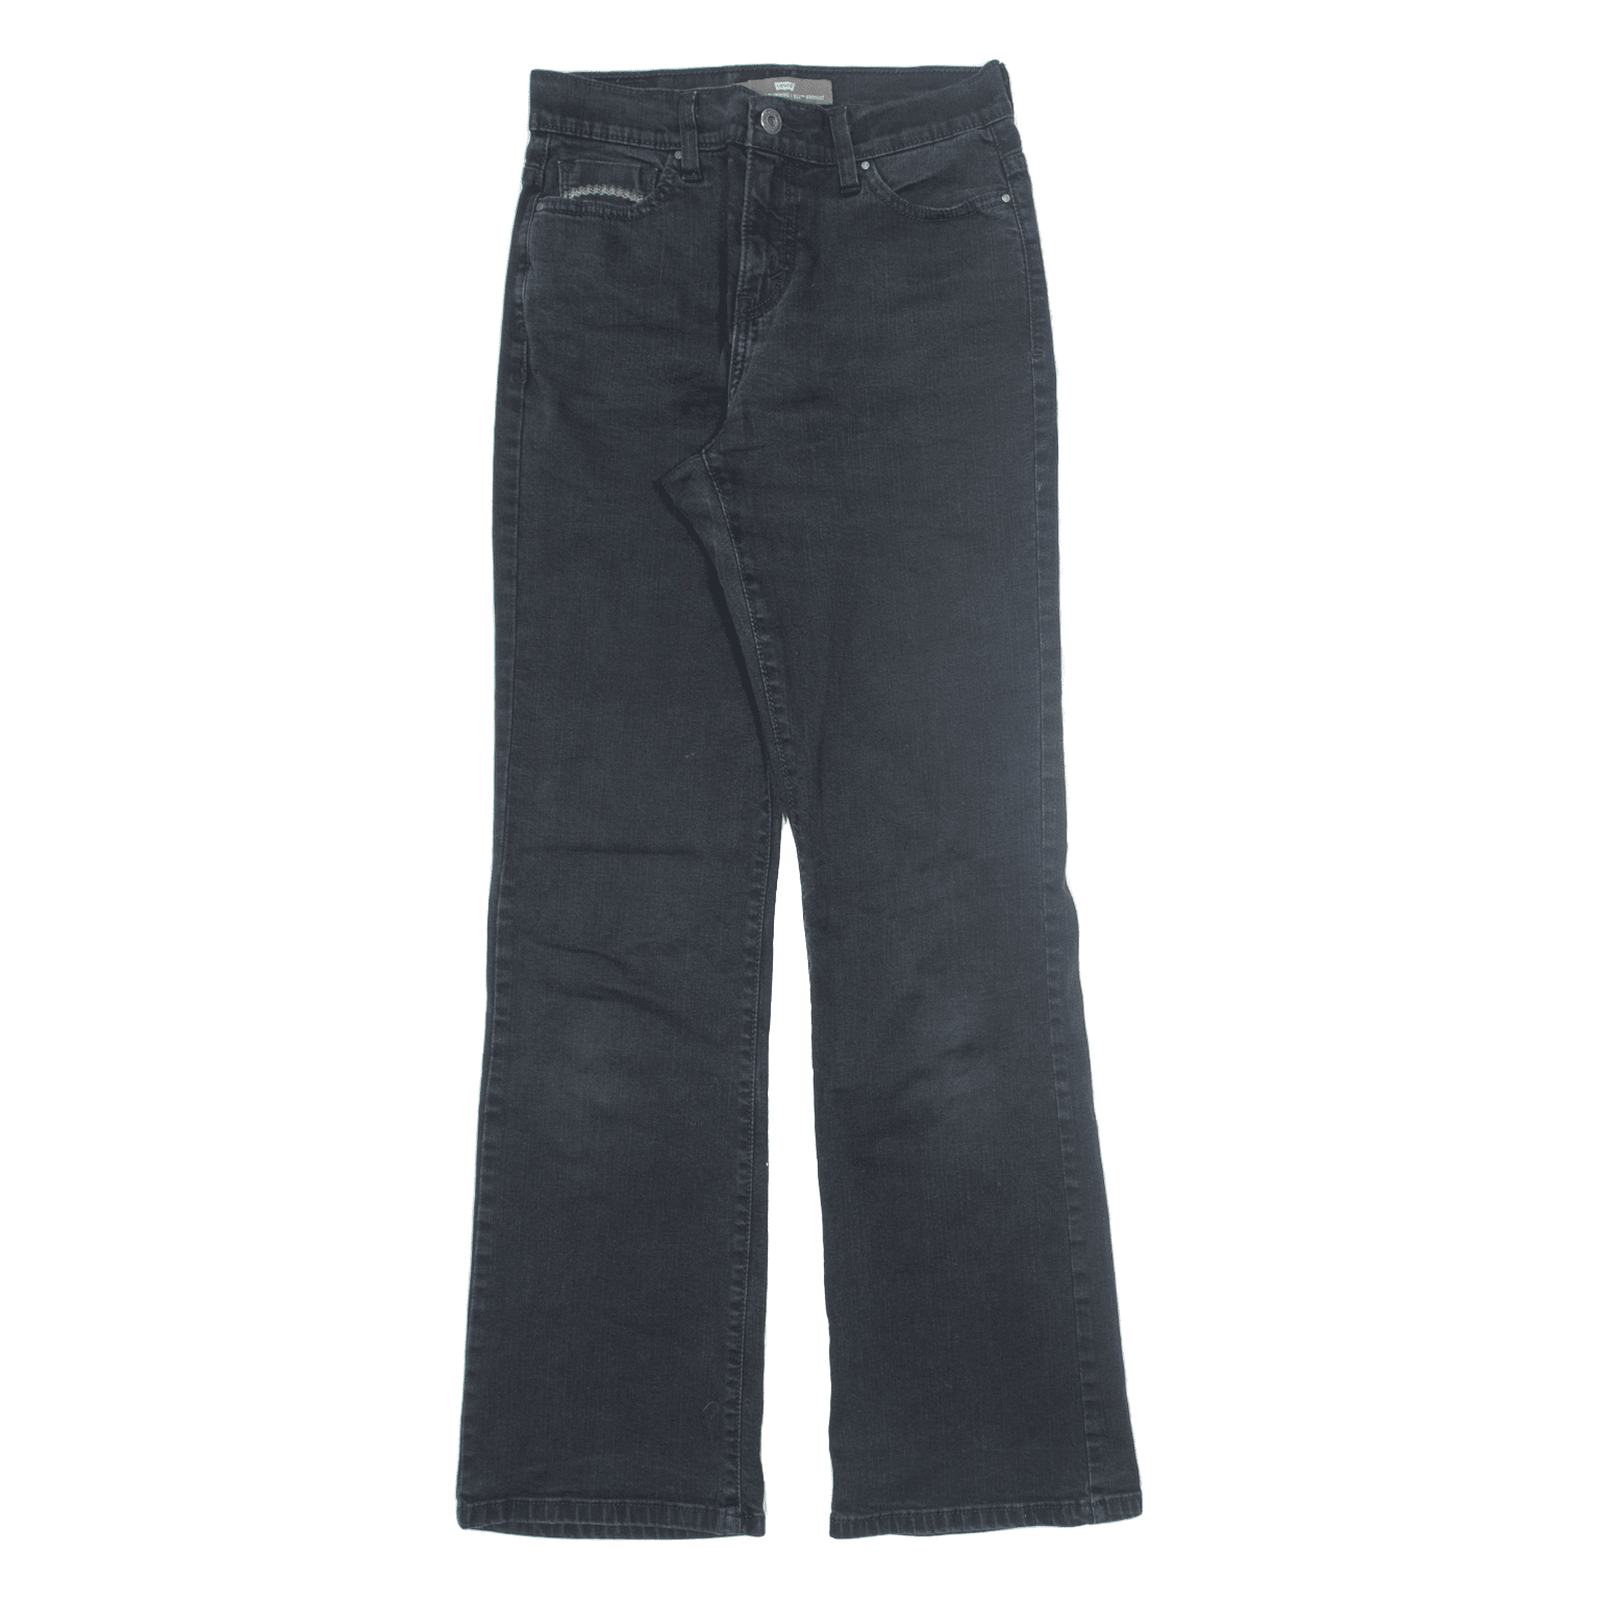 LEVI'S 512 Jeans Black Denim Slim Bootcut Womens W26 L32